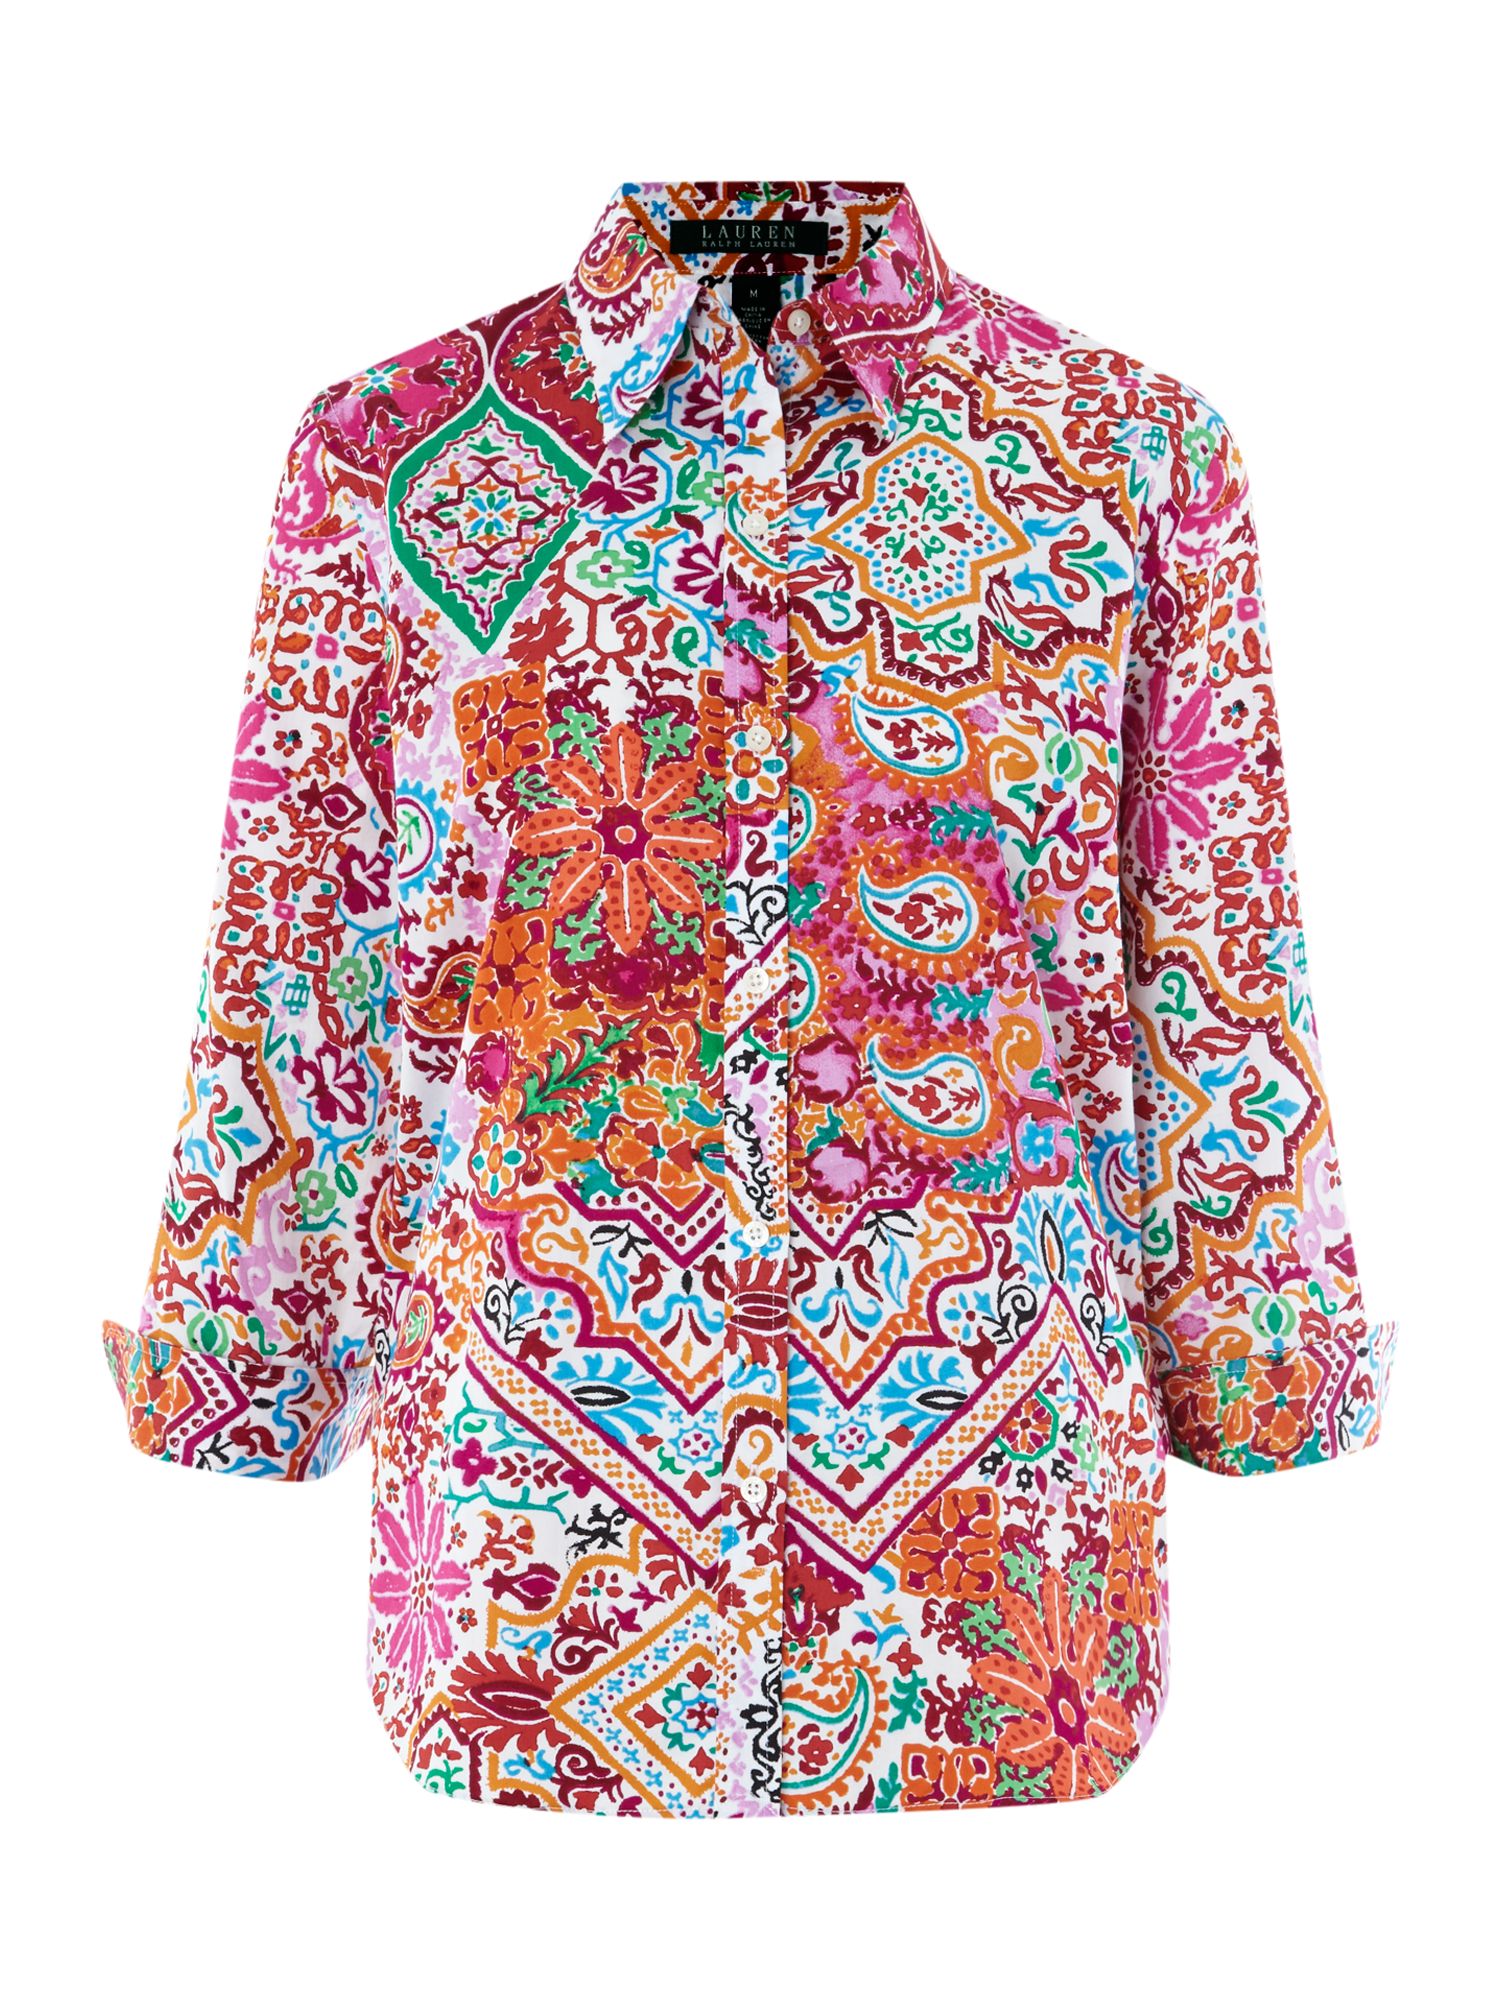 Lauren By Ralph Lauren Paisley Print Shirt in Multicolor (Multi ...